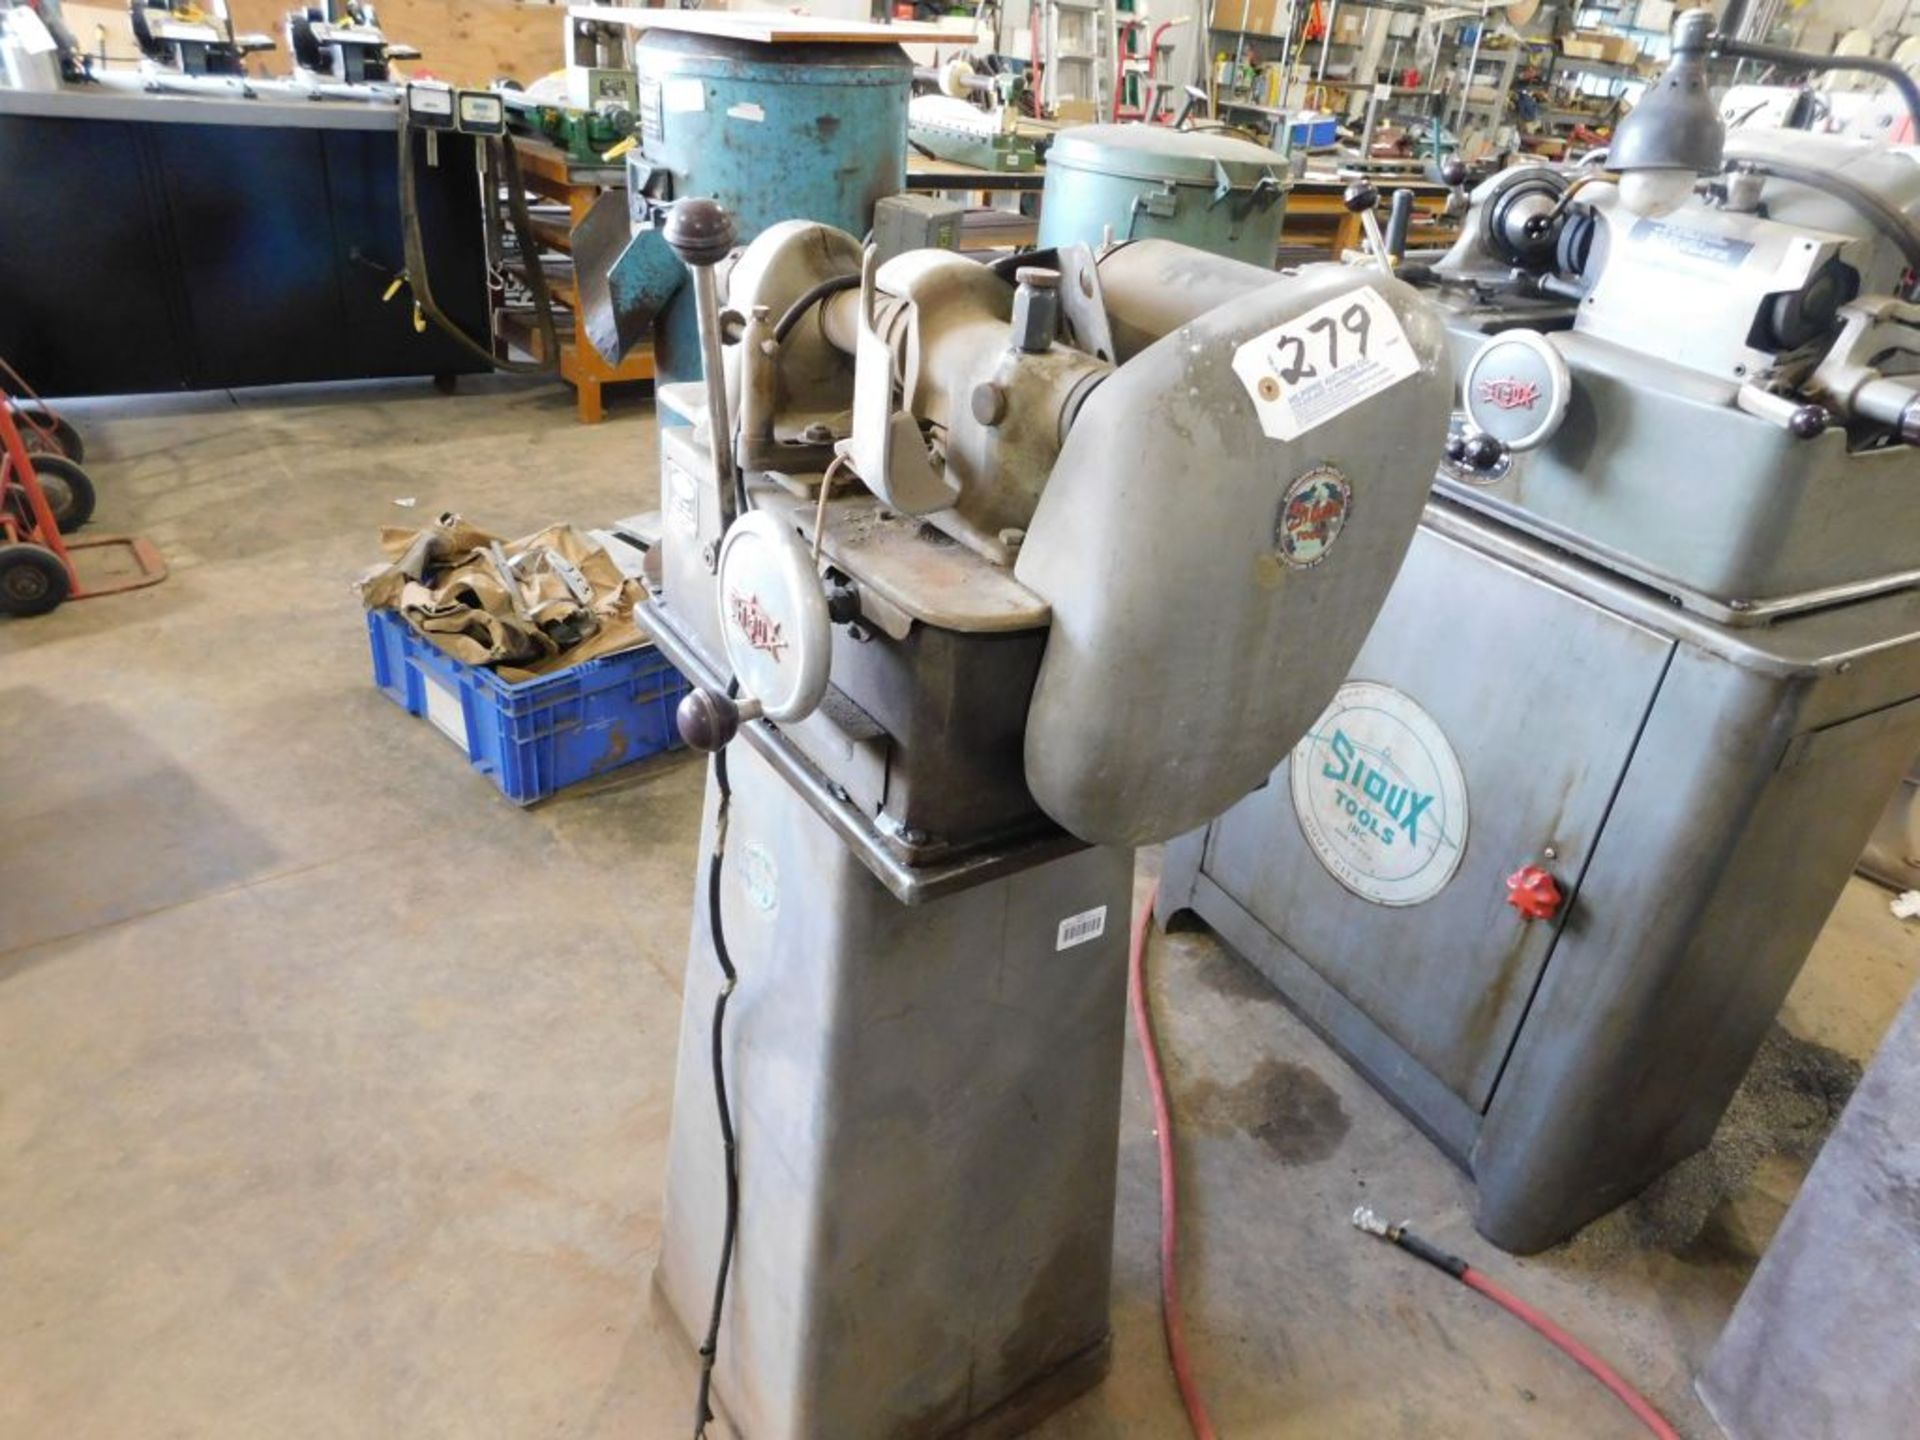 Sioux valve face grinding machine, model 645L, 115 volt.